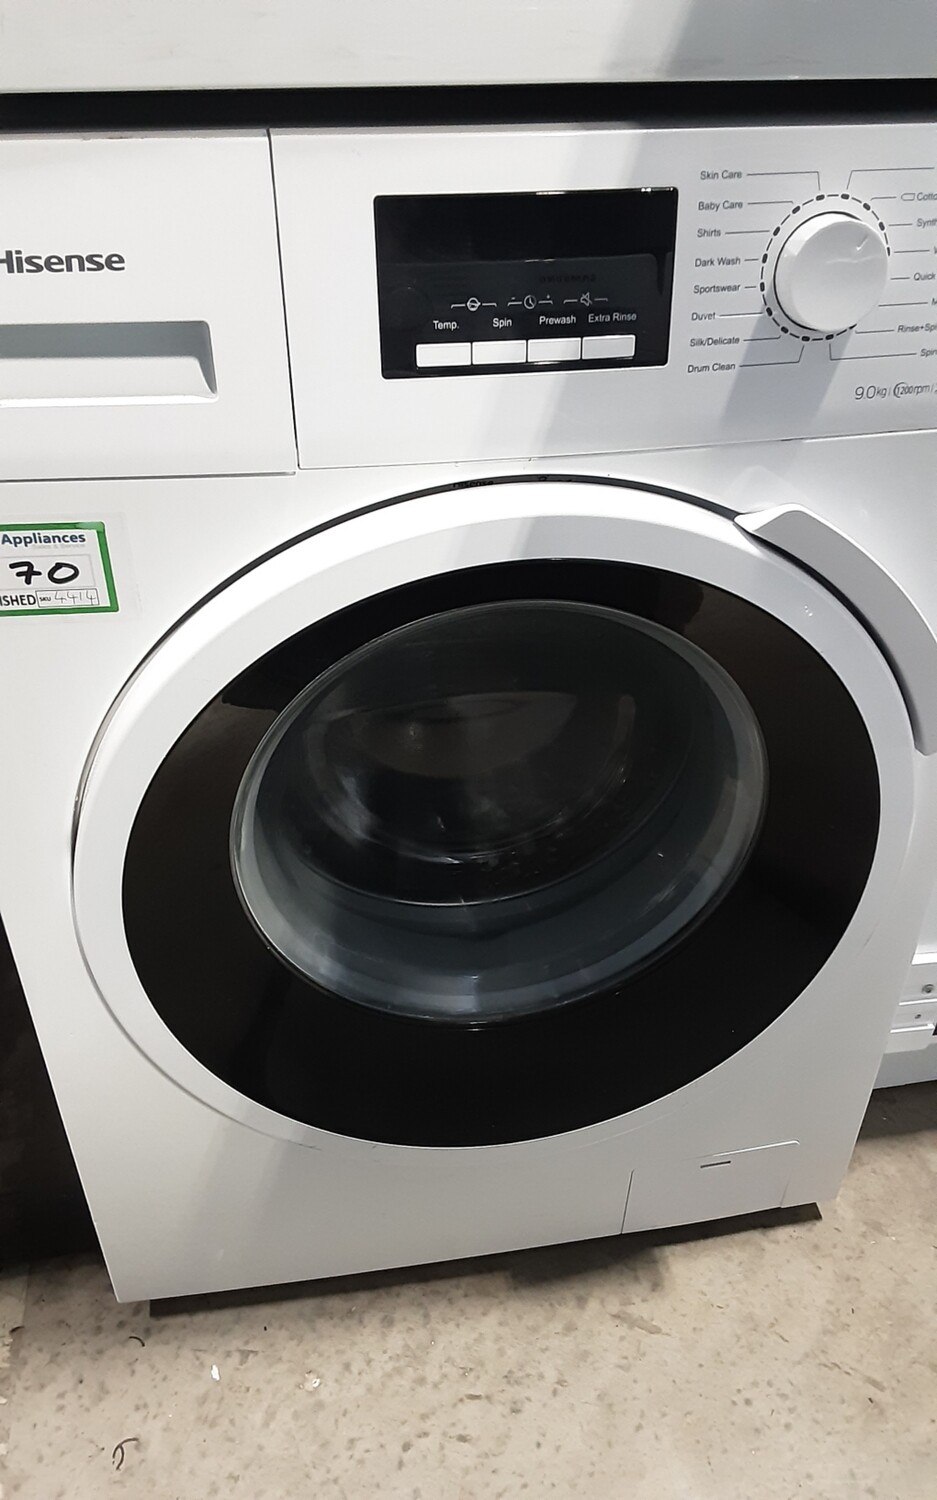 Hisense WFBJ90121 9kg Load 1200 Spin A+++ Washing Machine - White - Refurbished - 6 Month Guarantee